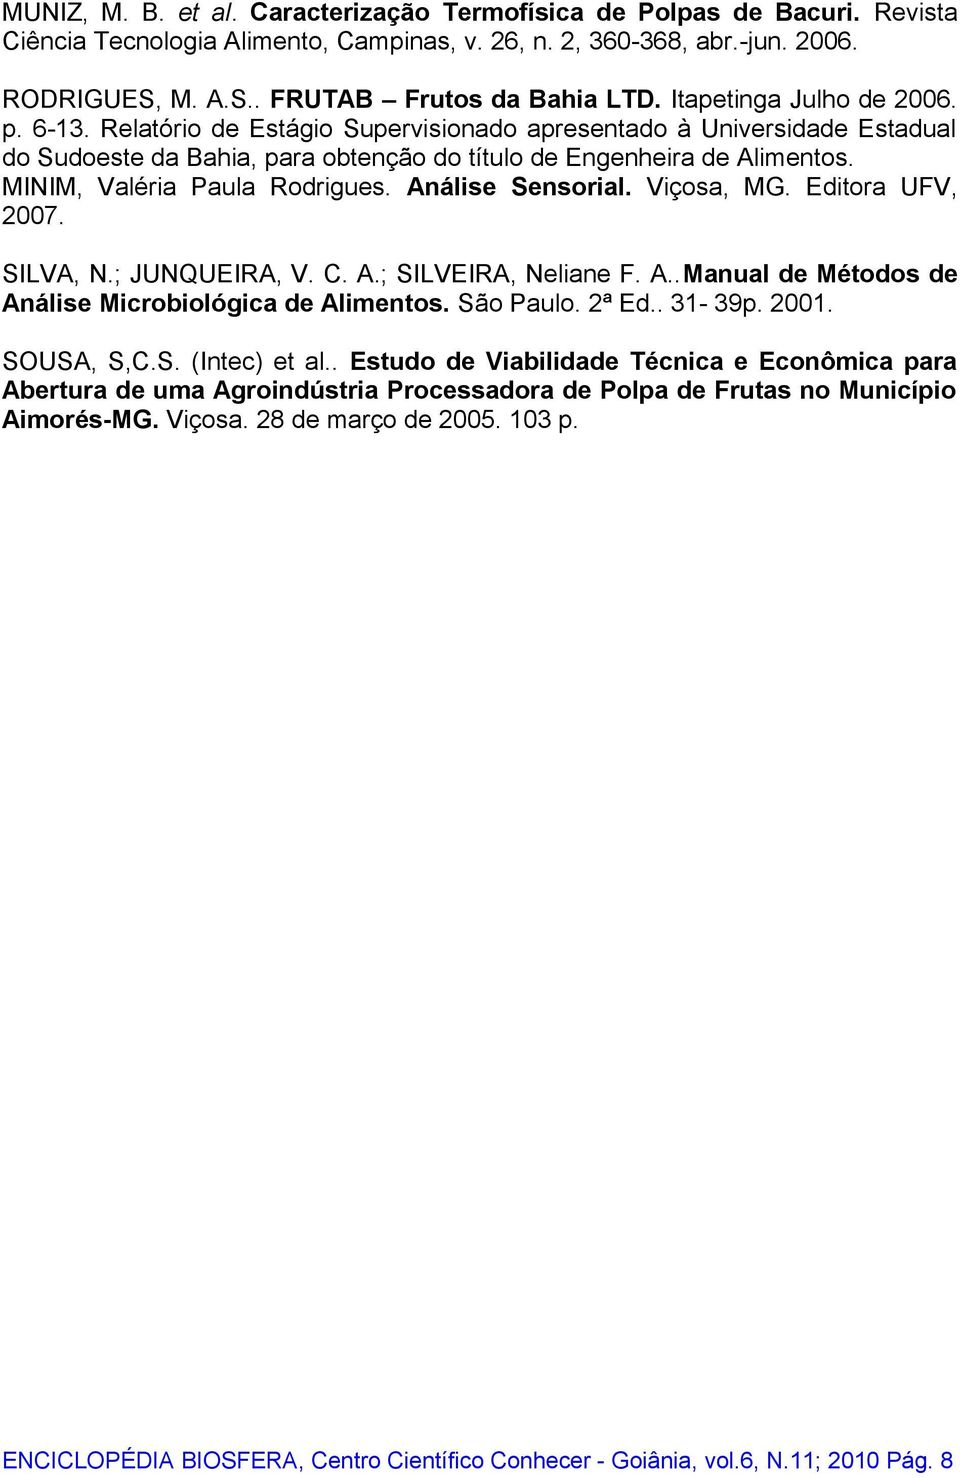 MINIM, Valéria Paula Rodrigues. nálise Sensorial. Viçosa, MG. Editora UFV, 2007. SILV, N.; JUNQUEIR, V. C..; SILVEIR, Neliane F...Manual de Métodos de nálise Microbiológica de limentos. São Paulo.